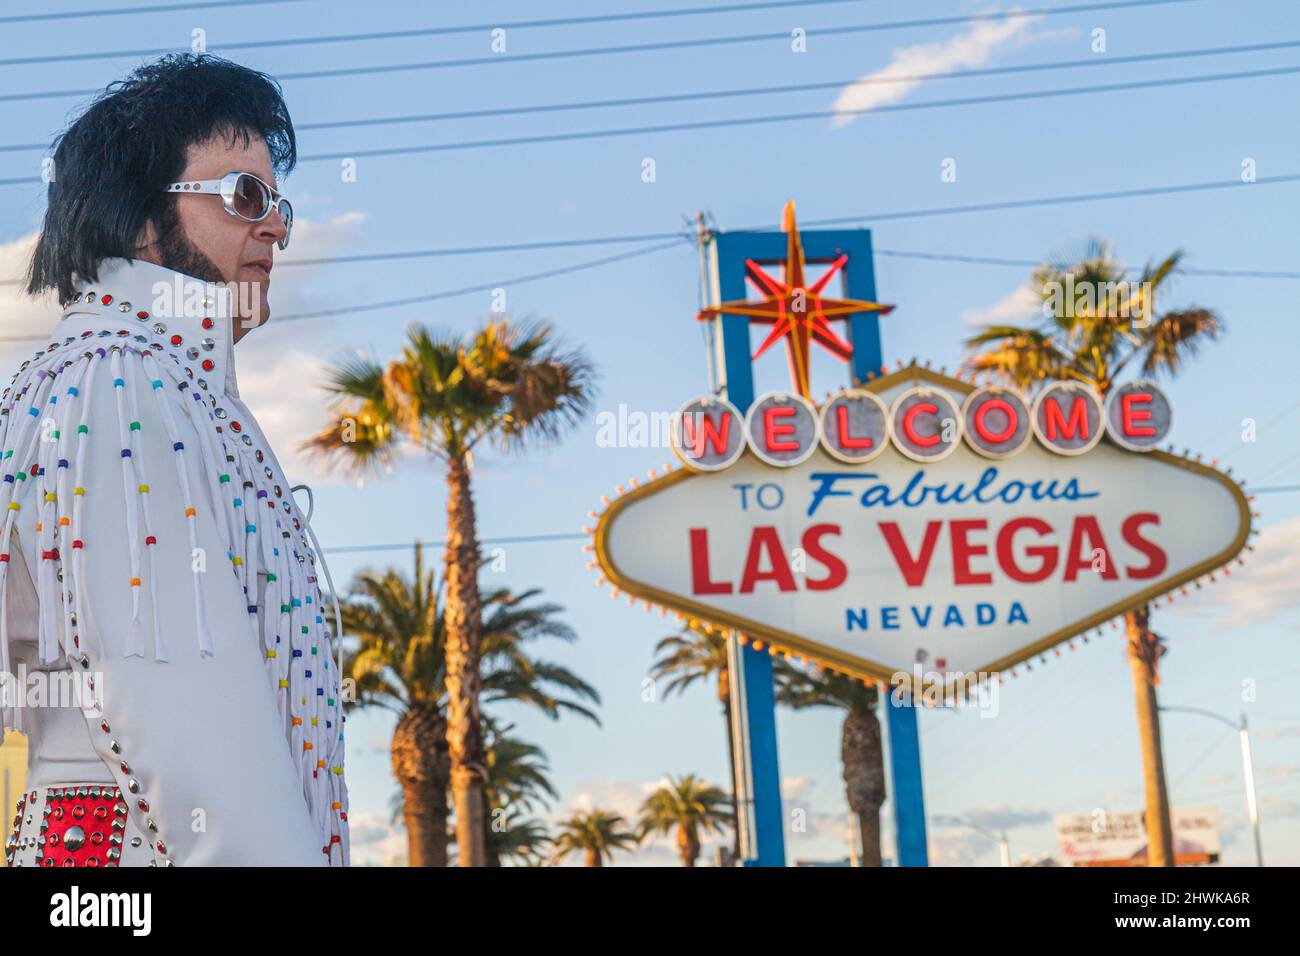 Las Vegas Nevada, South Las Vegas Boulevard Strip, Willkommen im fabelhaften Las Vegas Zeichen historischen, Mann männlichen Elvis Presley Imitator Promi-Look-alike Stockfoto